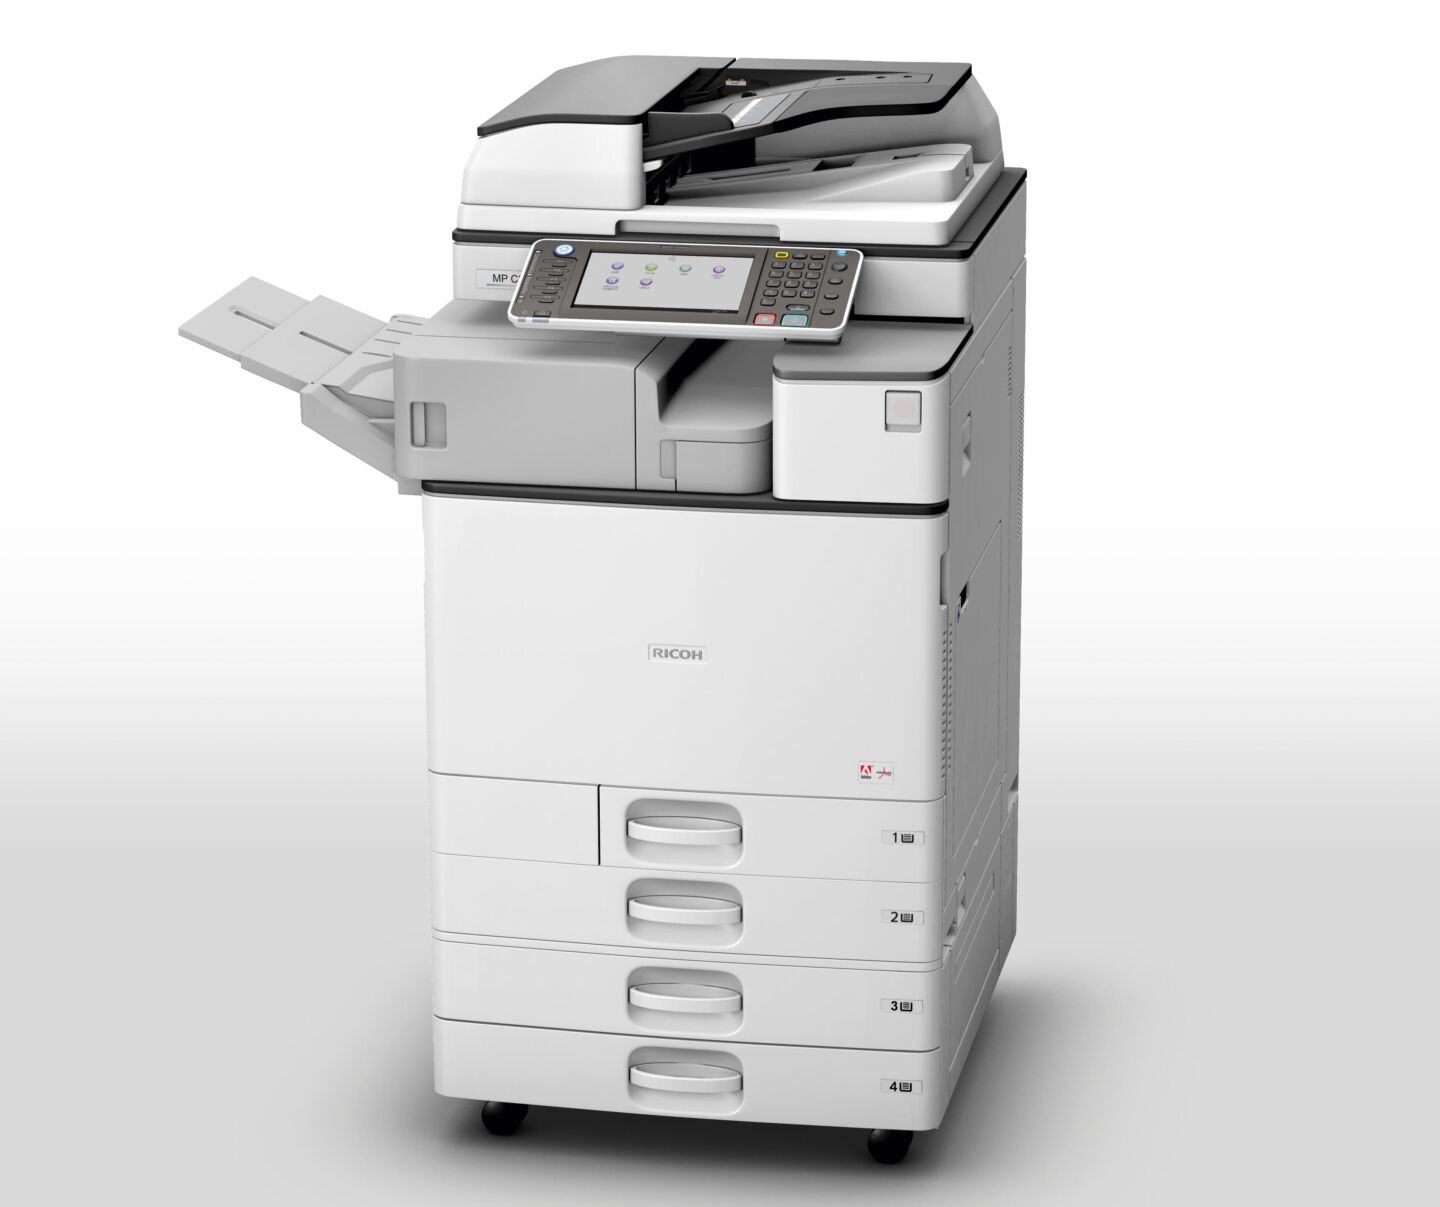 Thu mua máy photocopy cũ ở đâu uy tín?